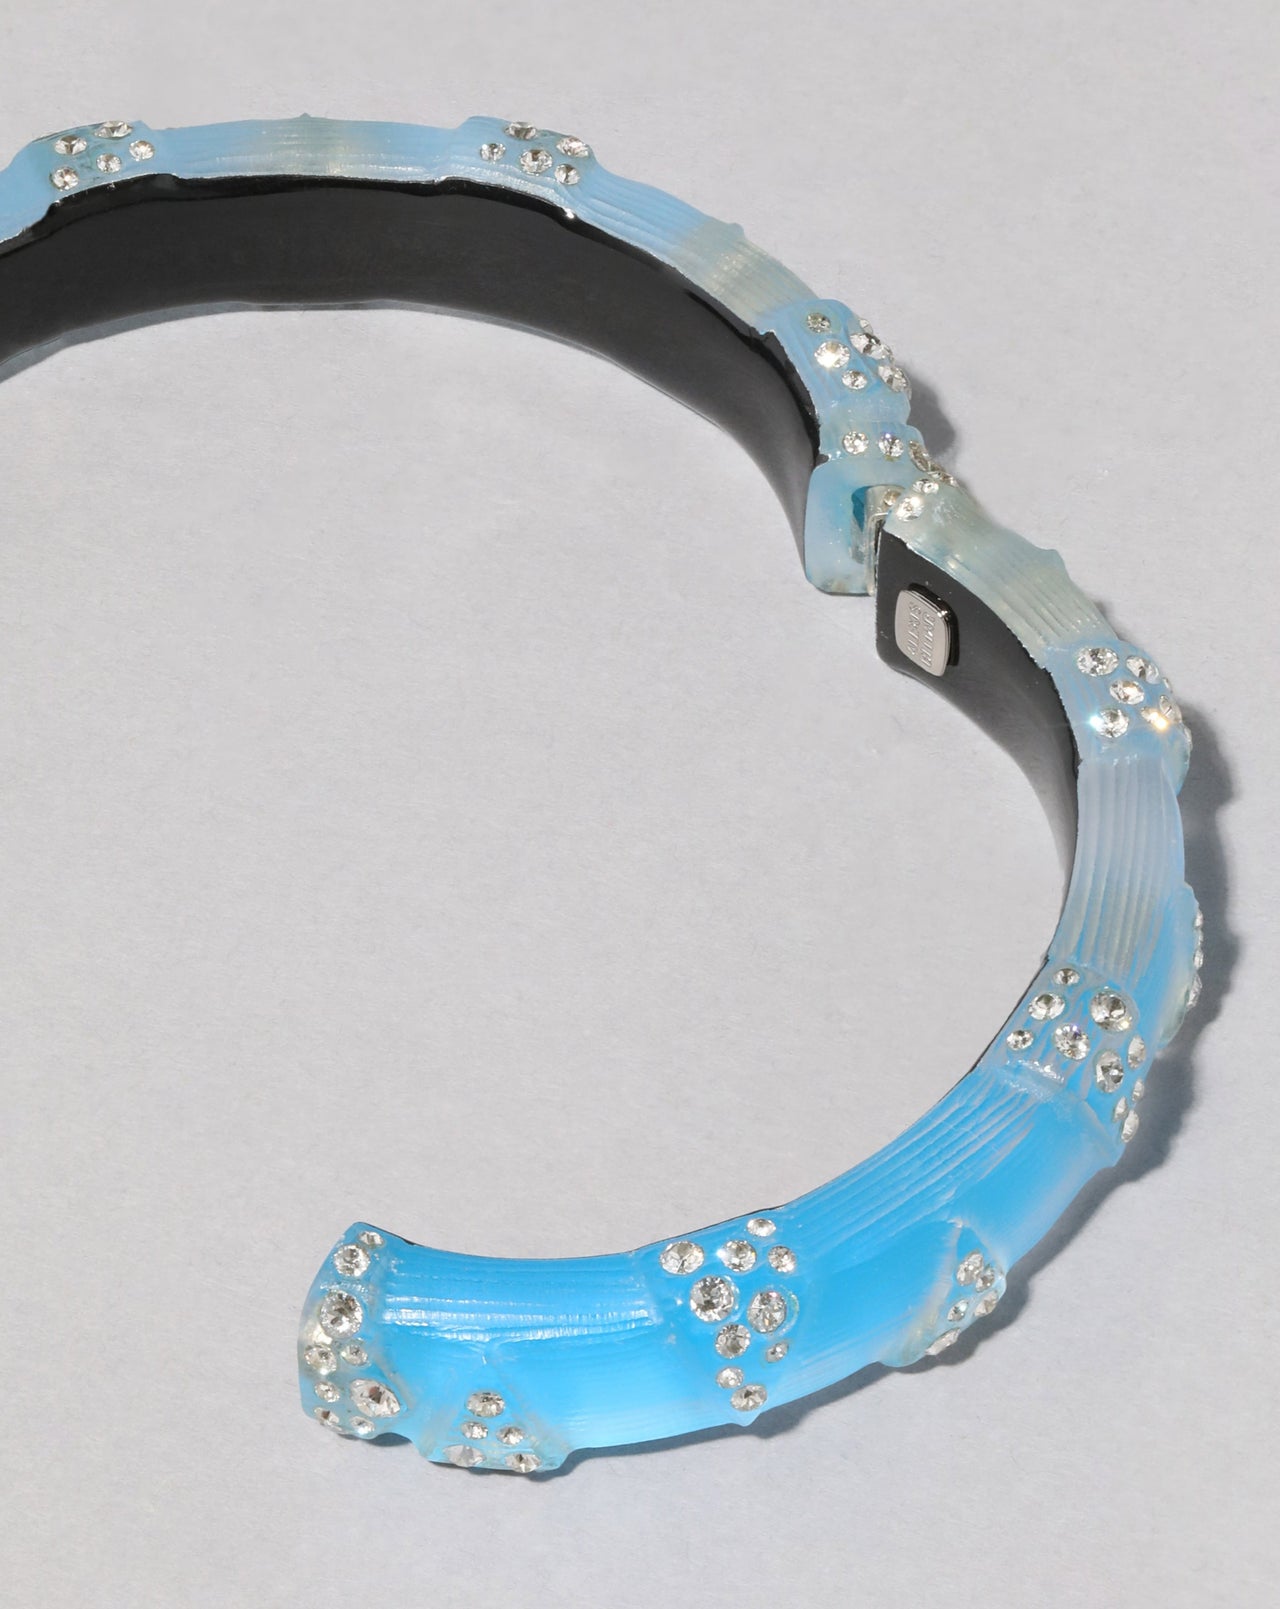 Punk Deco Lucite Crystal Hinge Bracelet - Neon Blue - Photo 2